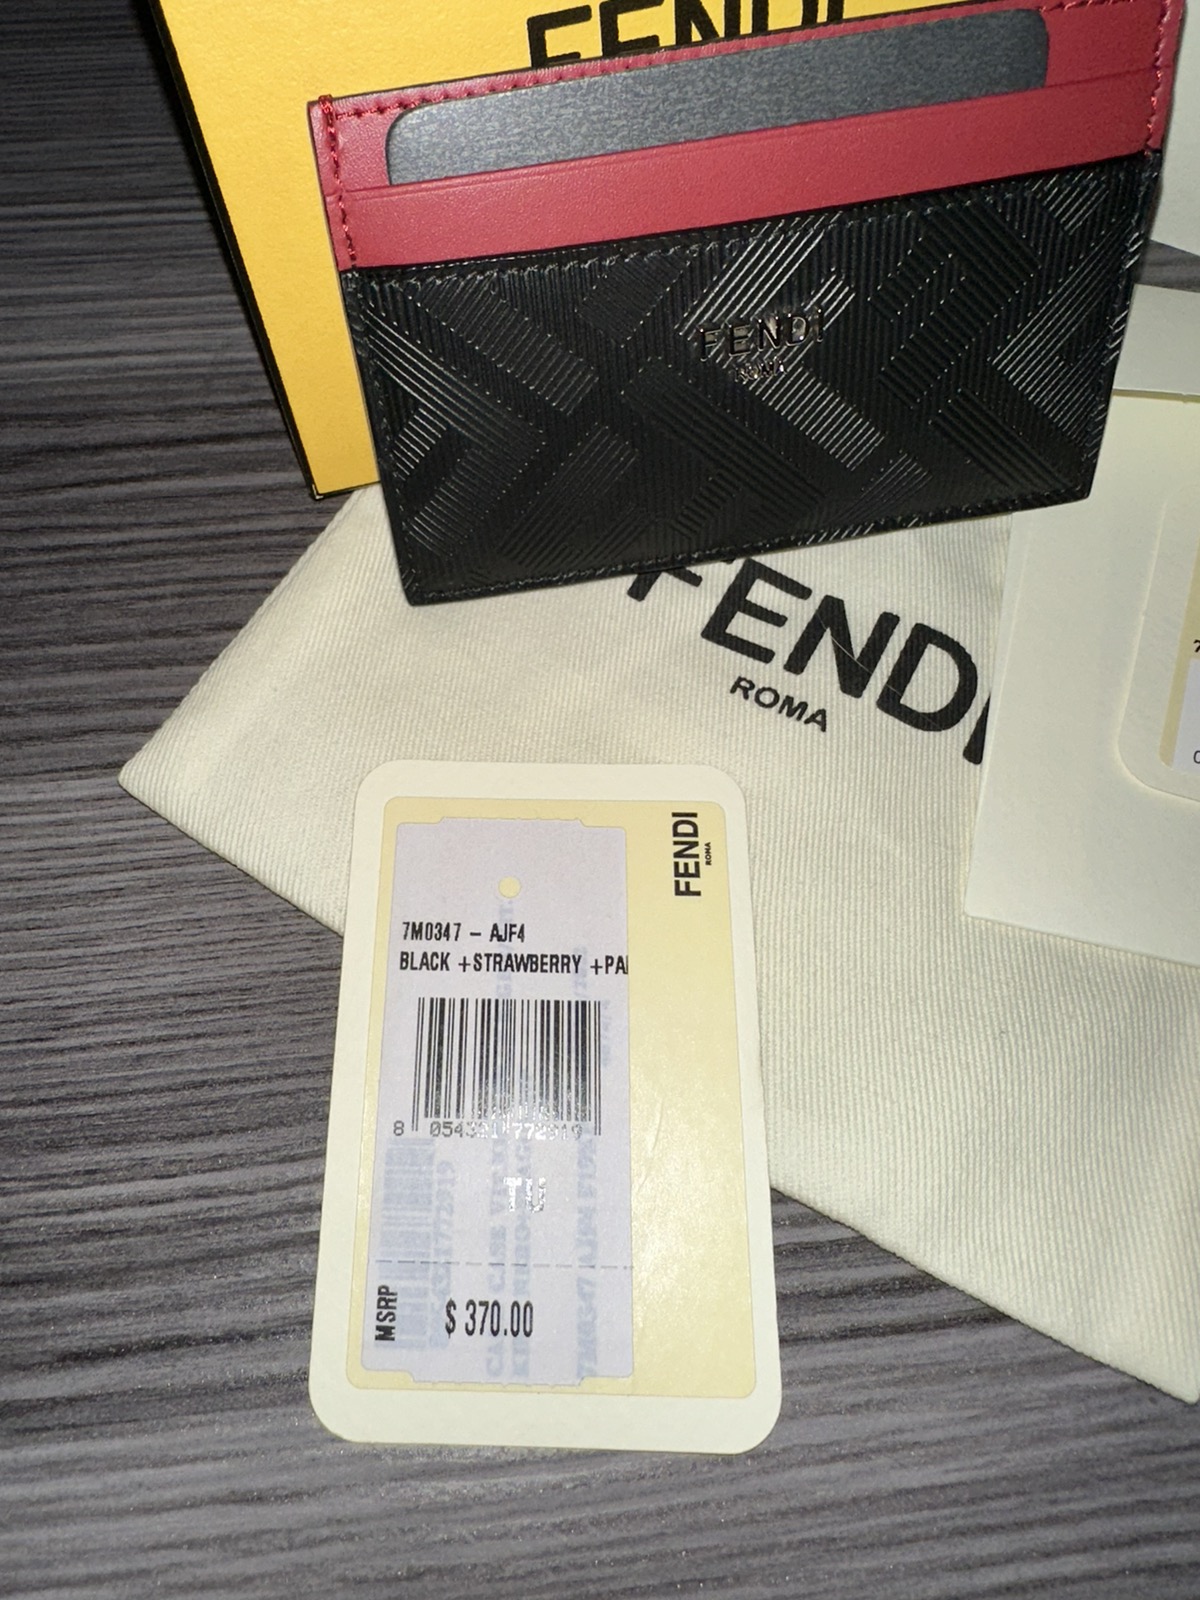 FENDI CARD CASE